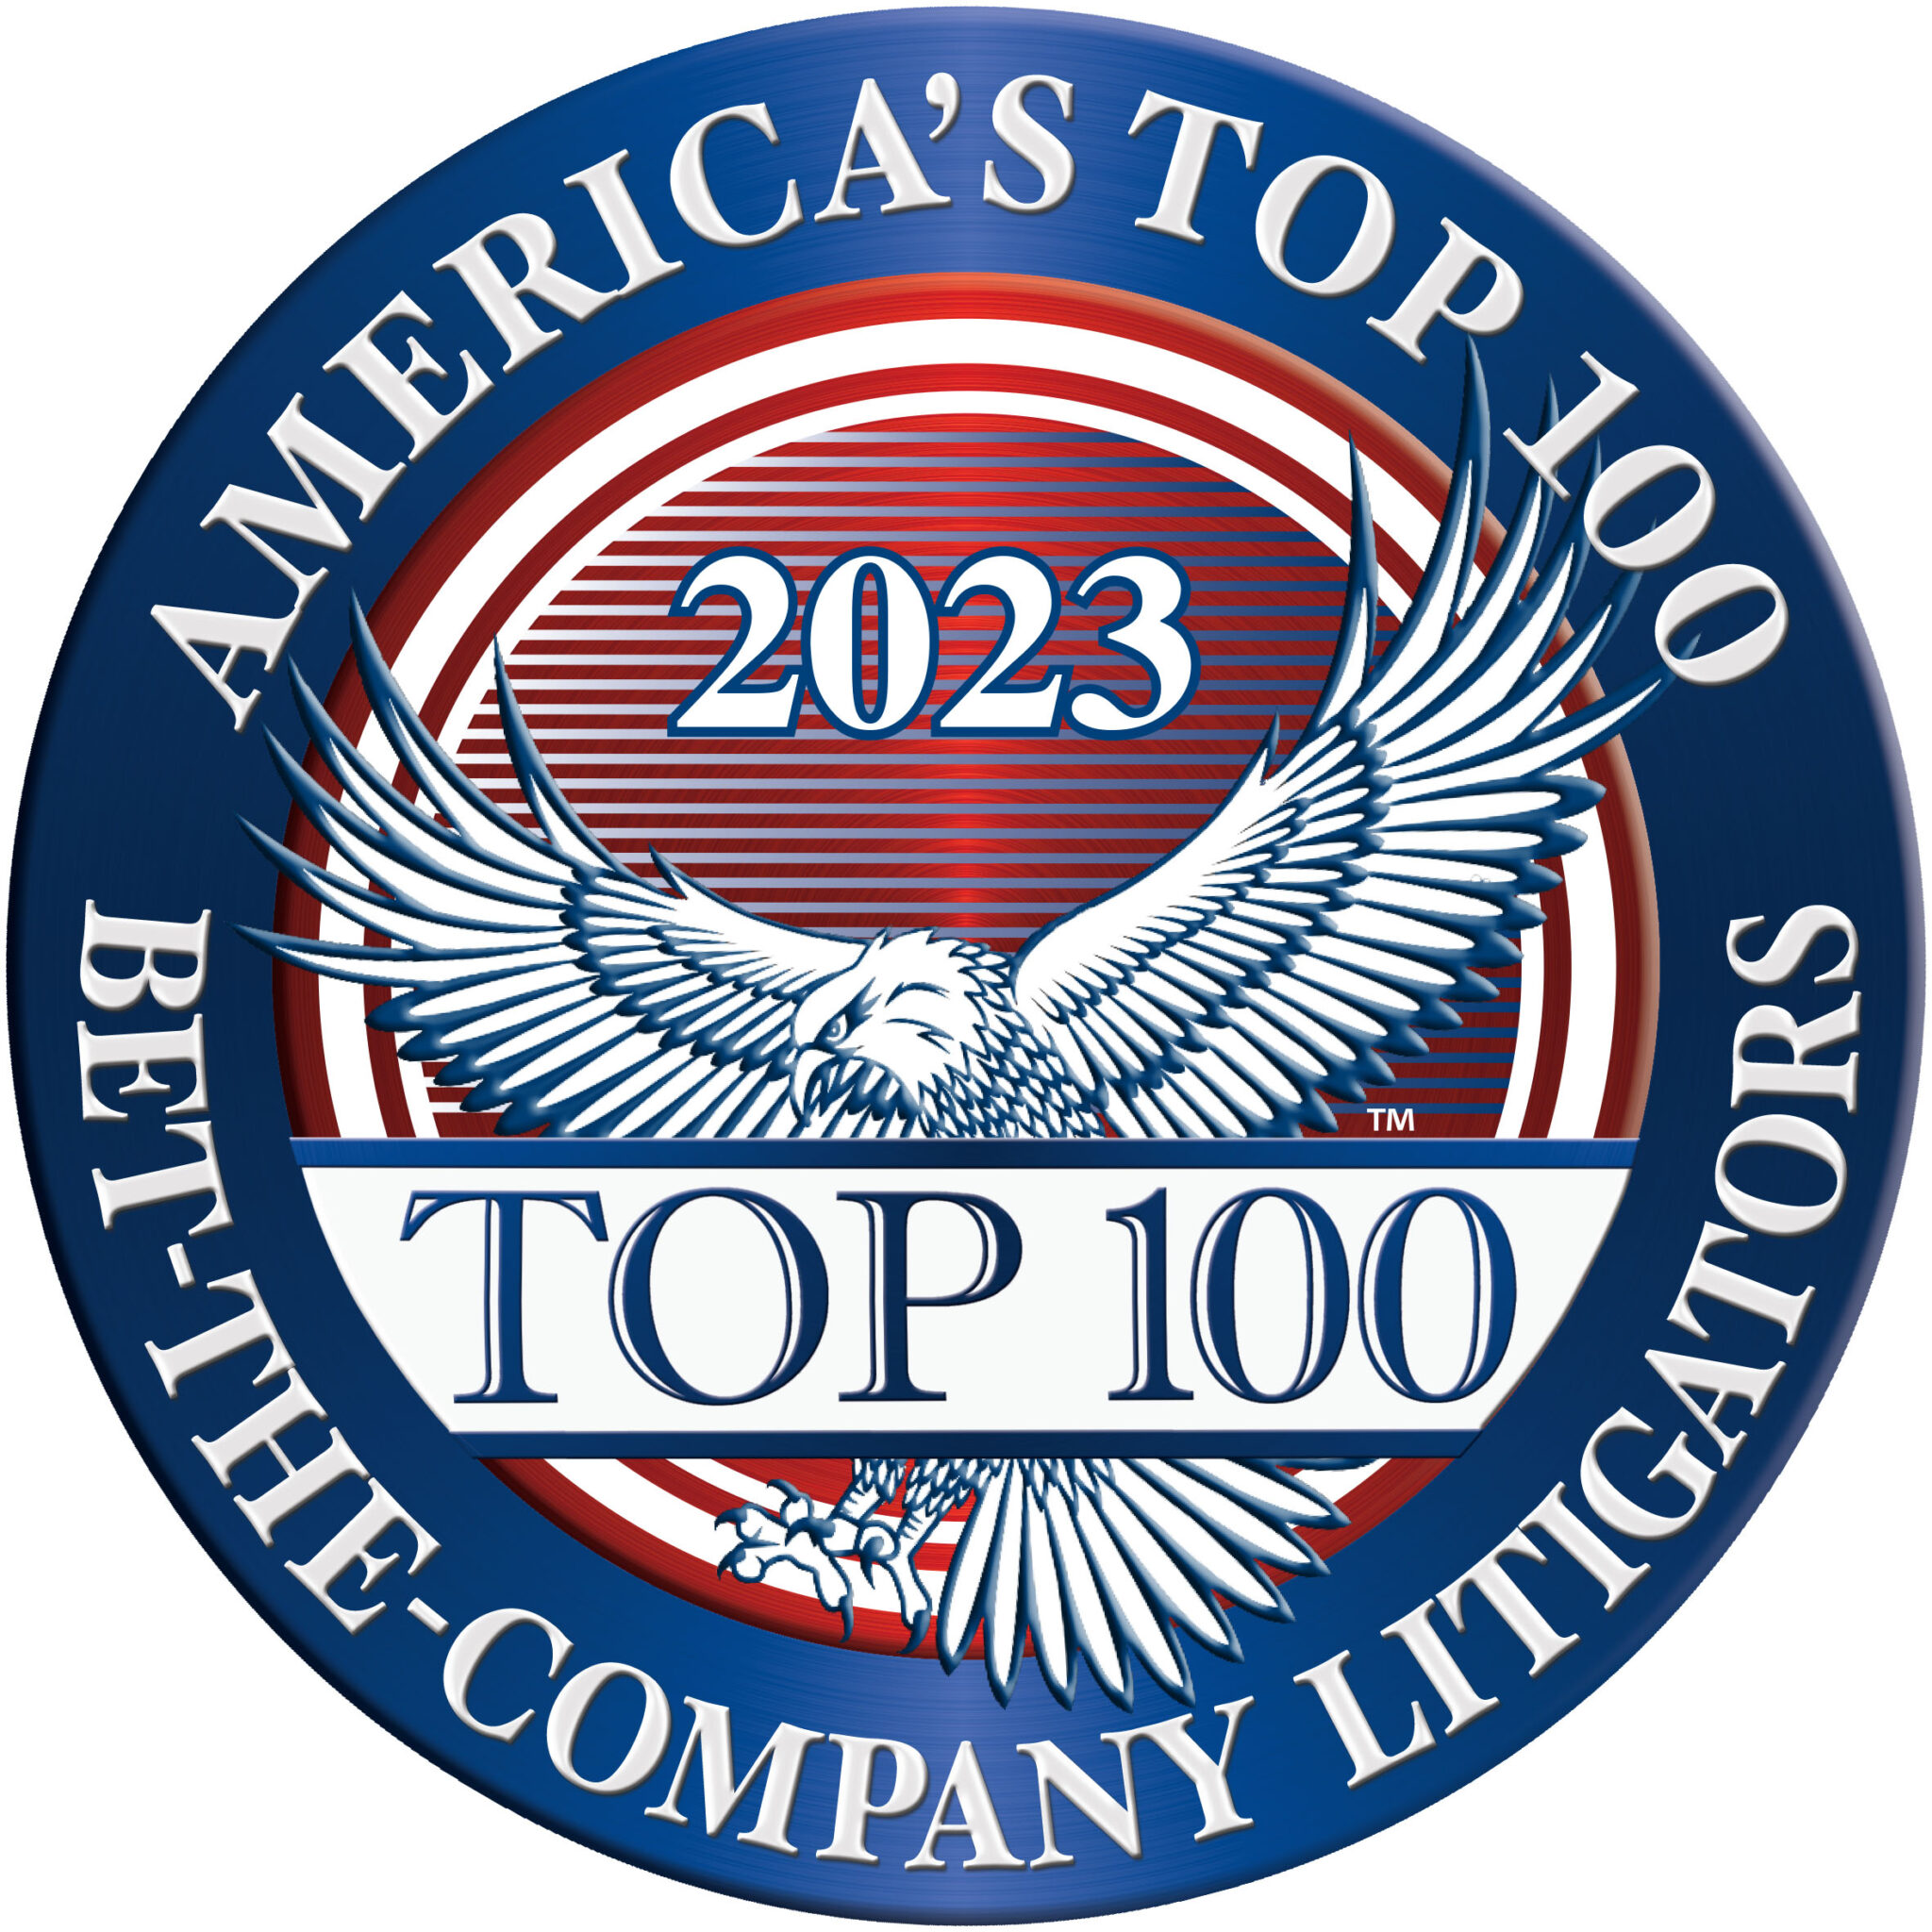 Top 100_Bet the Company_2023_EER